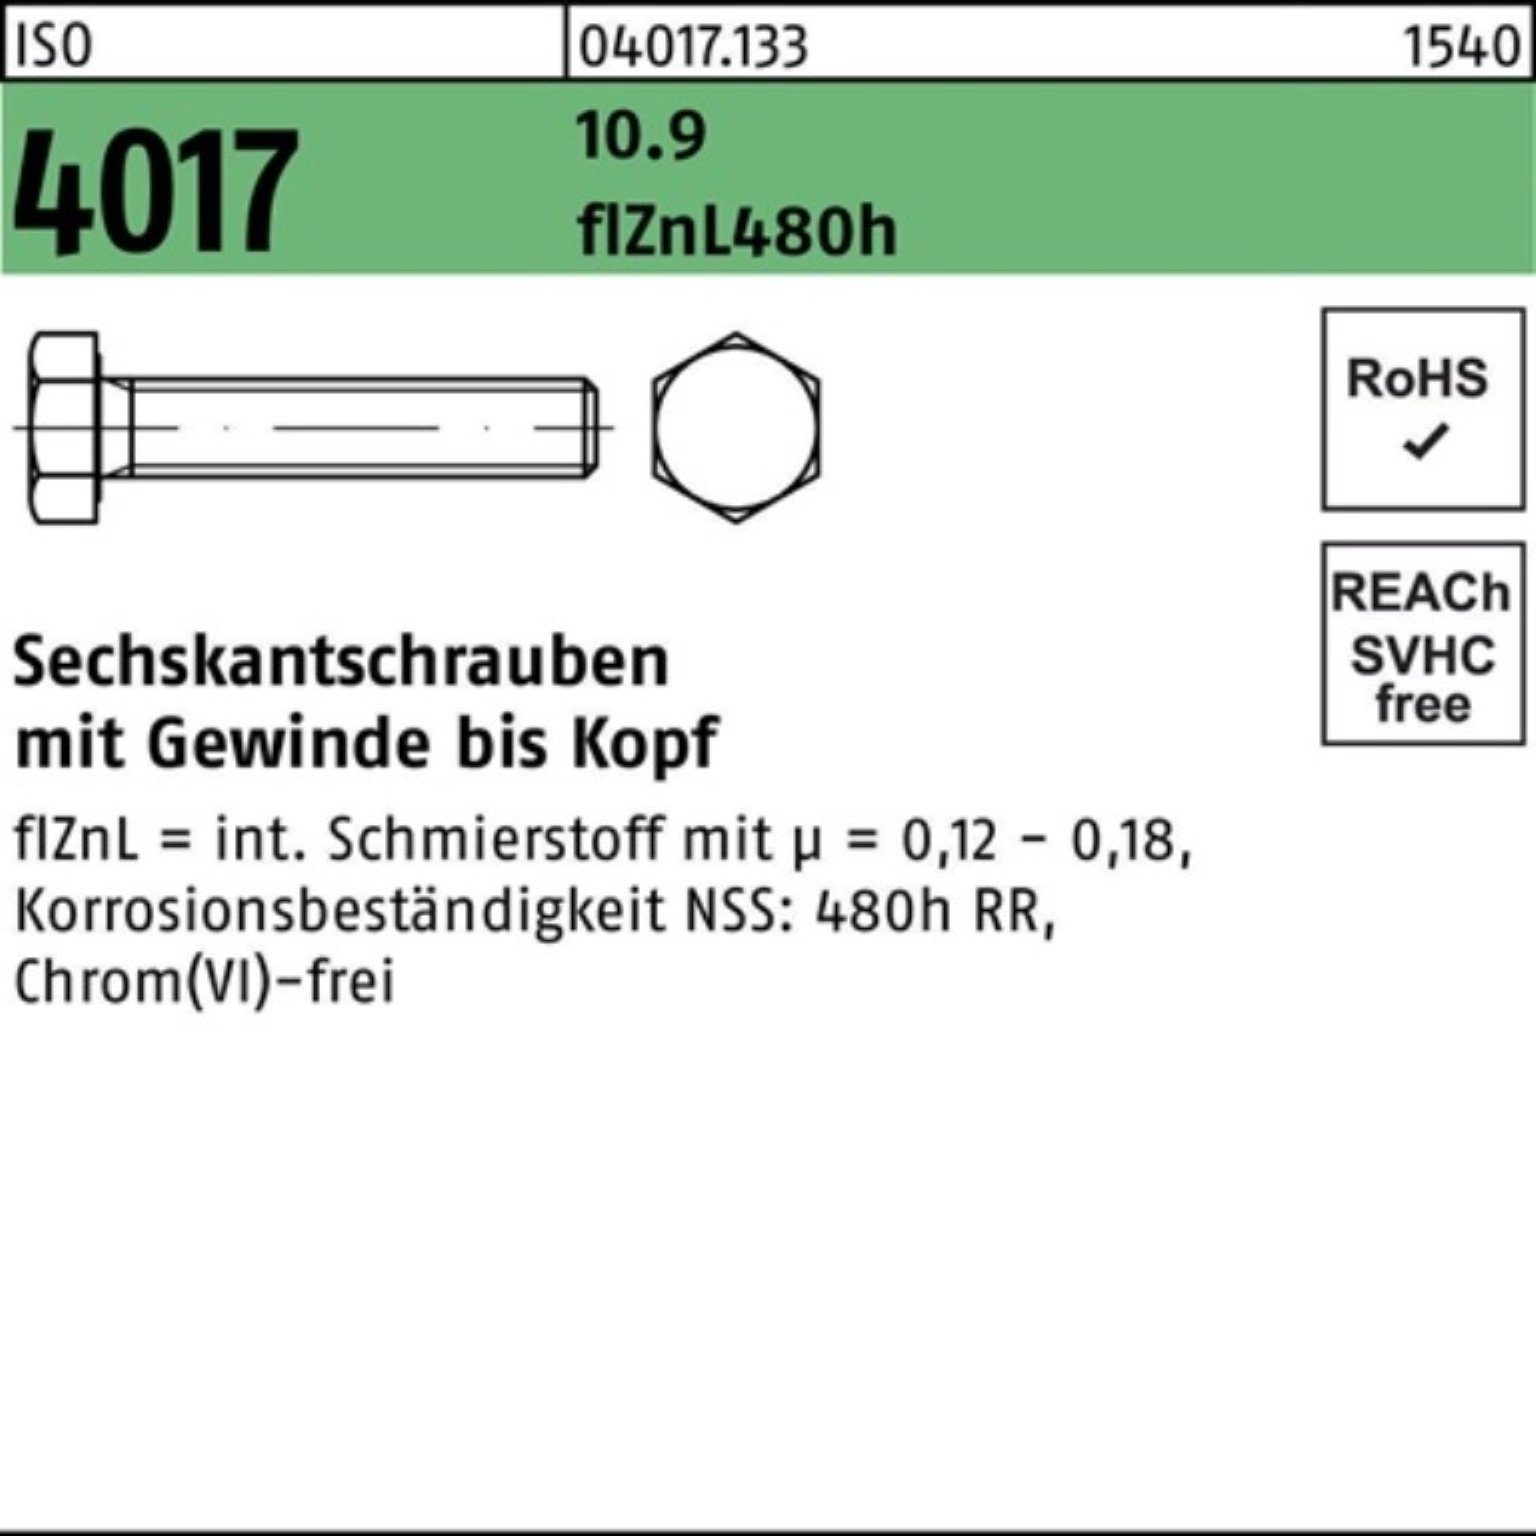 Sechskantschraube 10.9 M10x Bufab Pack 4017 100er 100 ISO VG zinklamellenb. Sechskantschraube